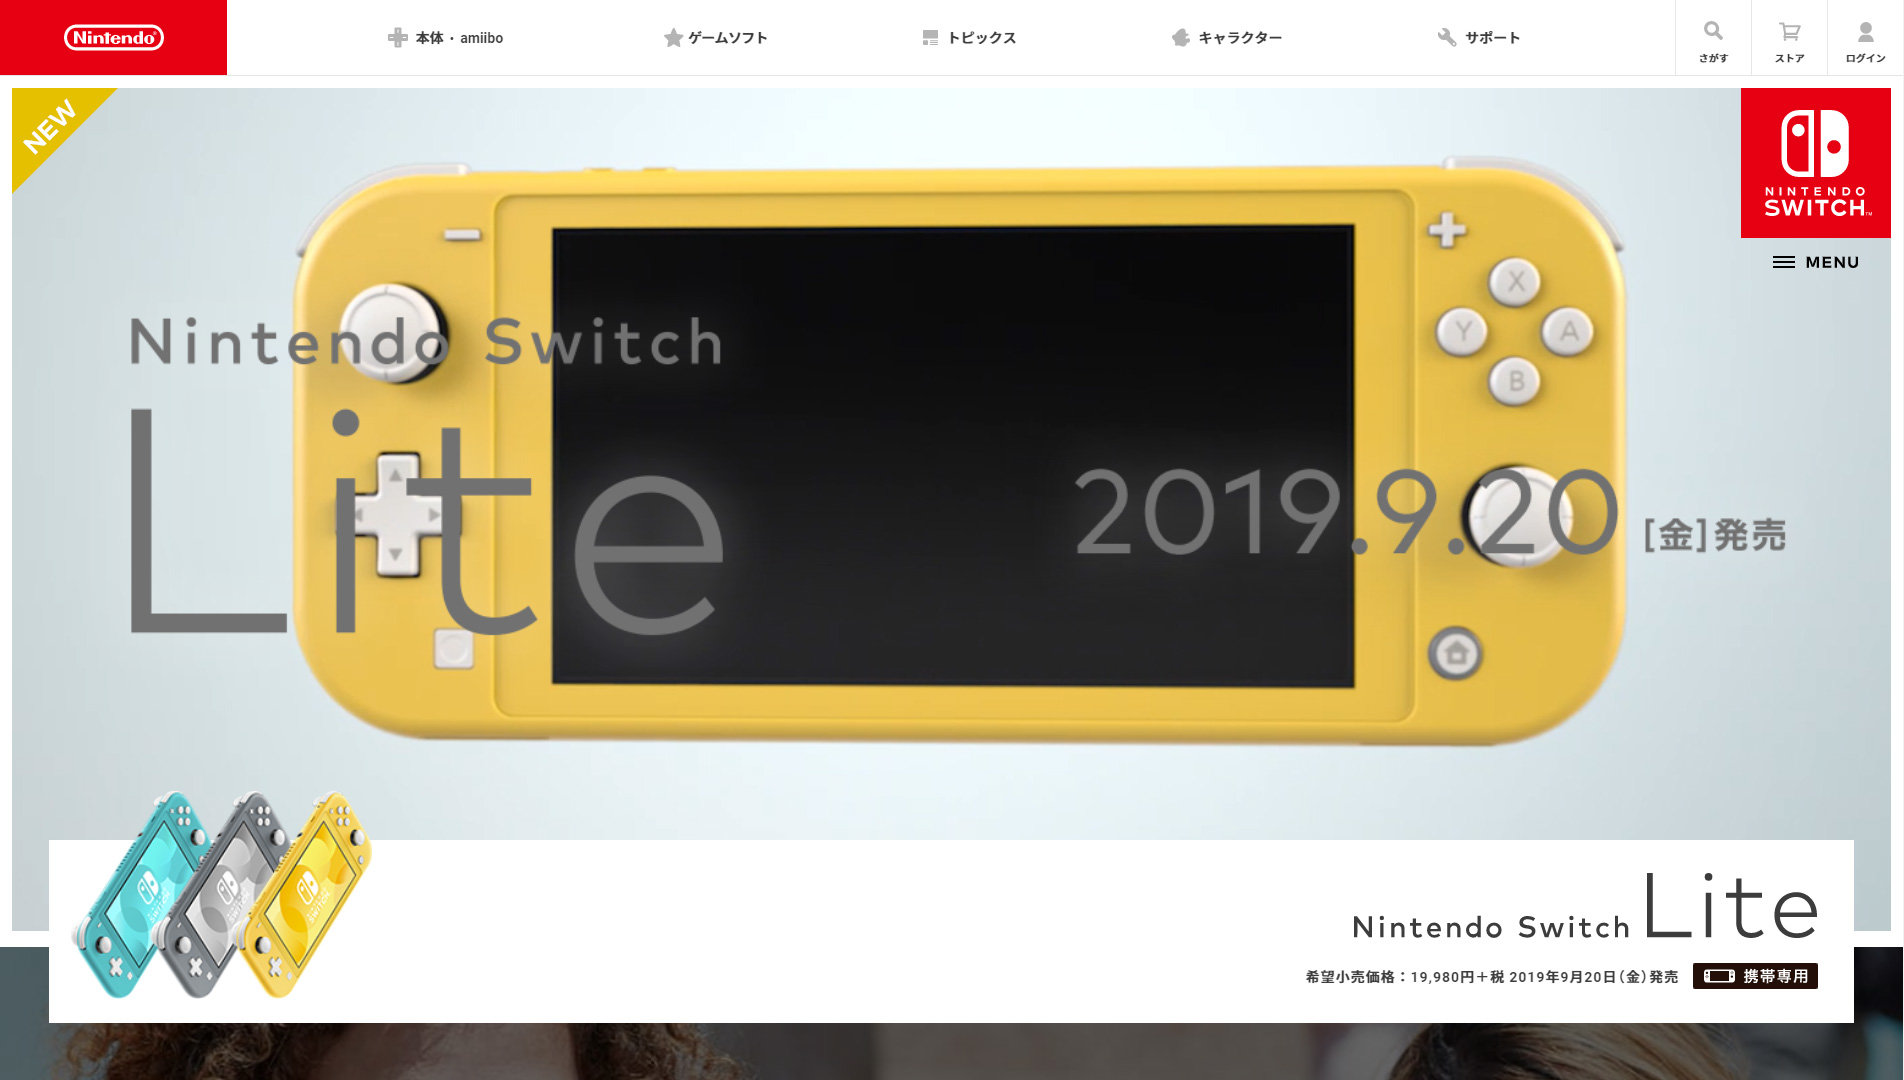 スイッチライト 箱無し | Nintendo Switch NINTENDO SWITCH LITE 箱